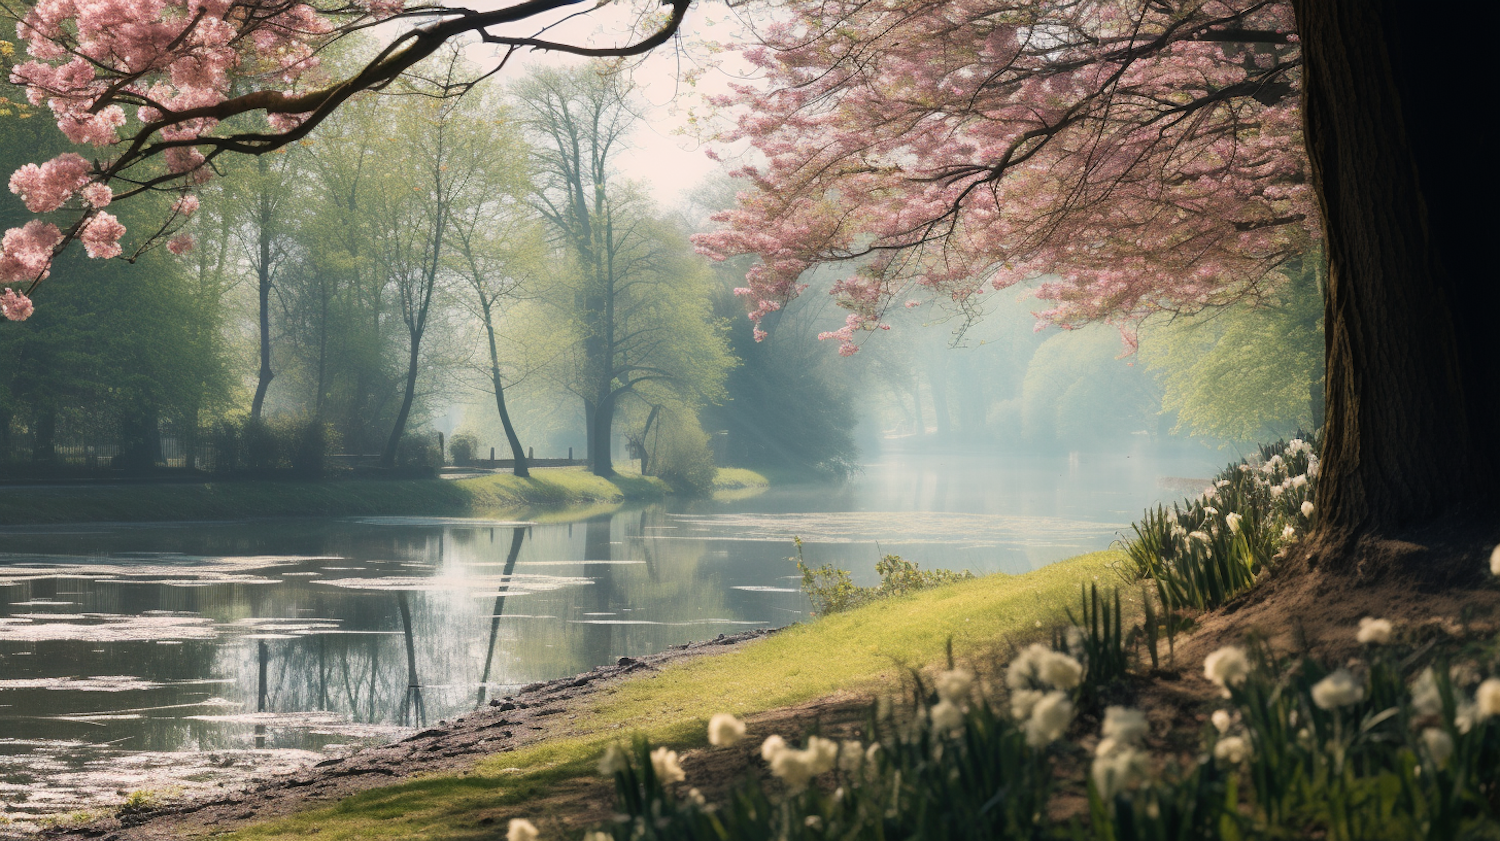 Springtime Serenity by the Cherry Blossom Lake